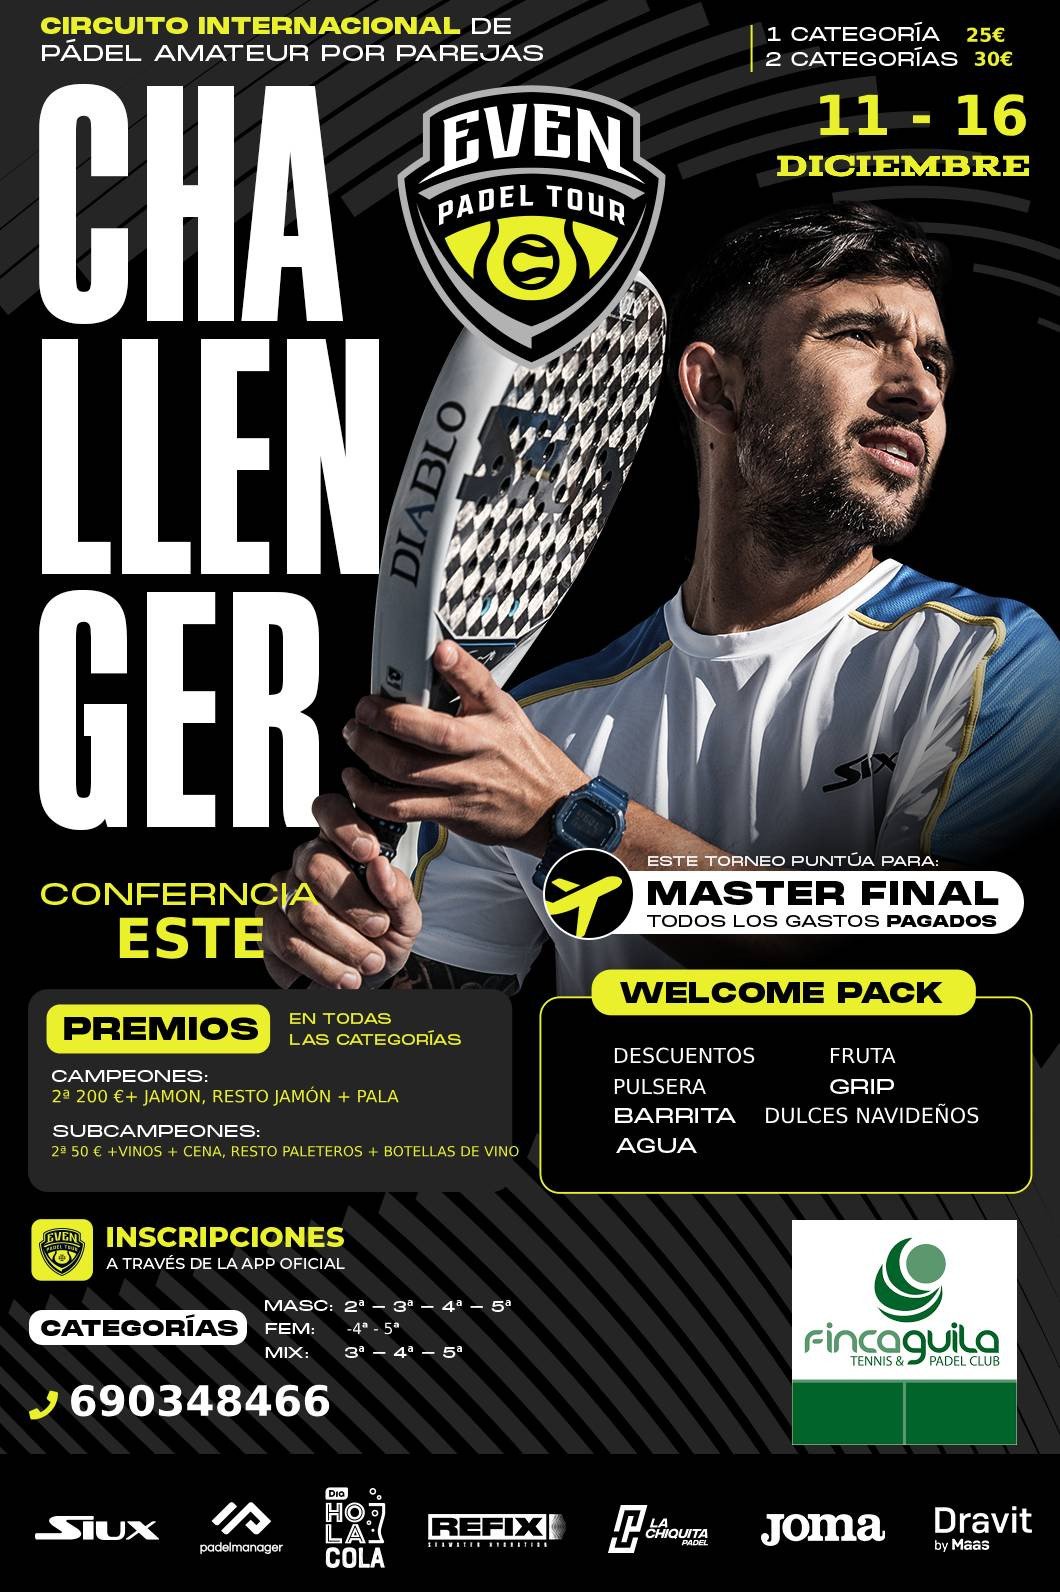 1er Challenger Even Padel Finca Guila Tenis & Padel Club, Benidorm